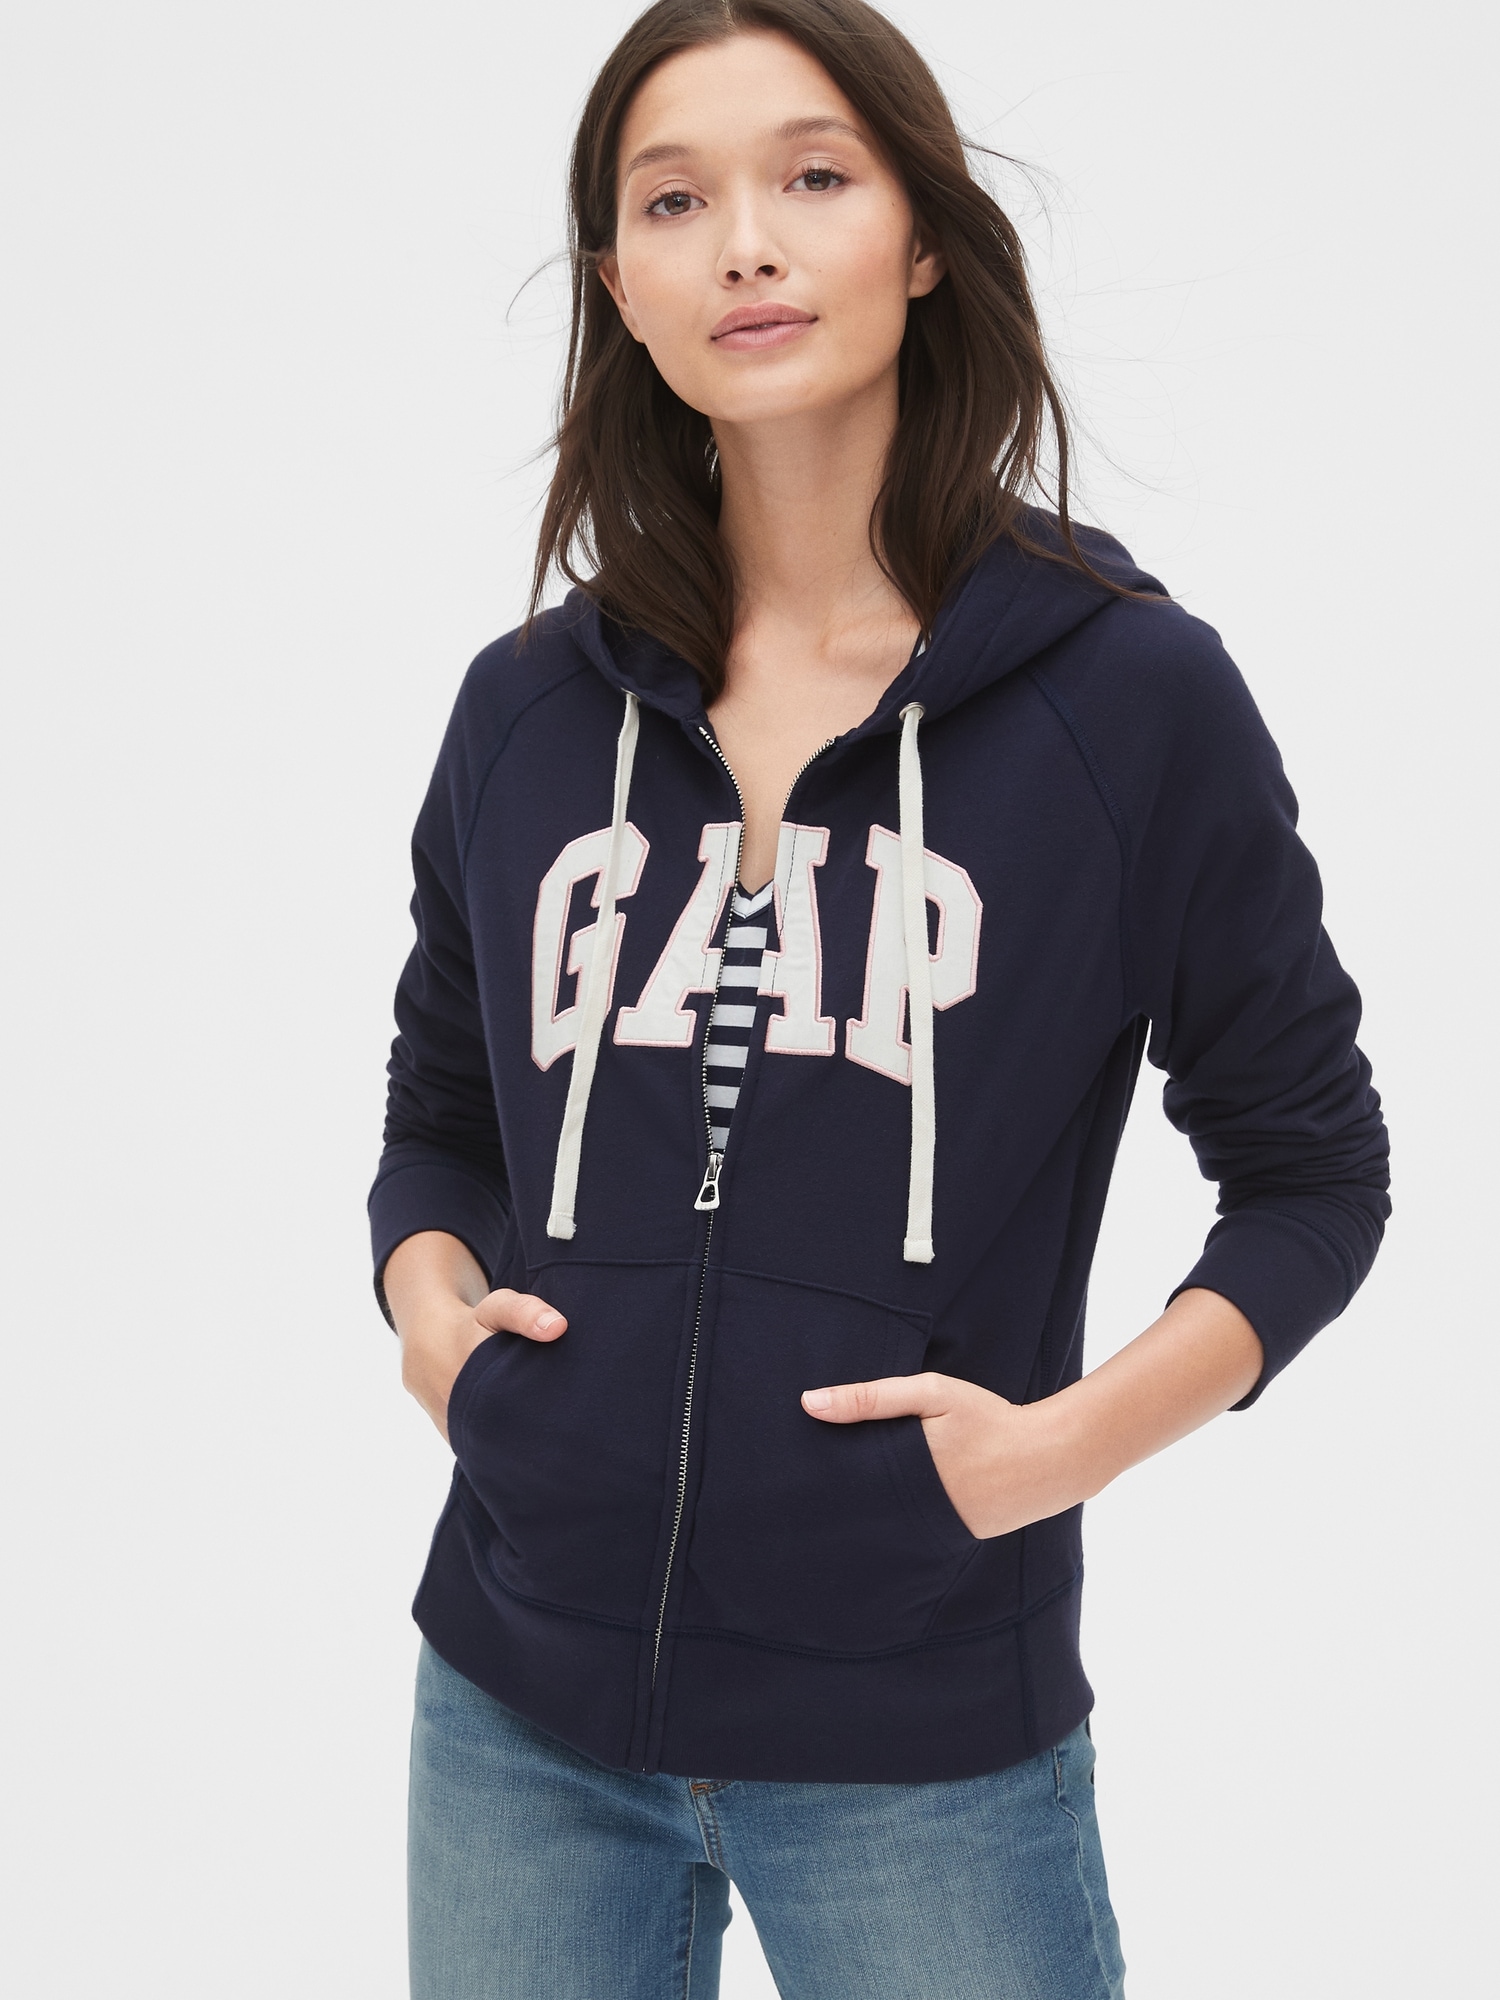 Gap Logo Hoodie | Gap